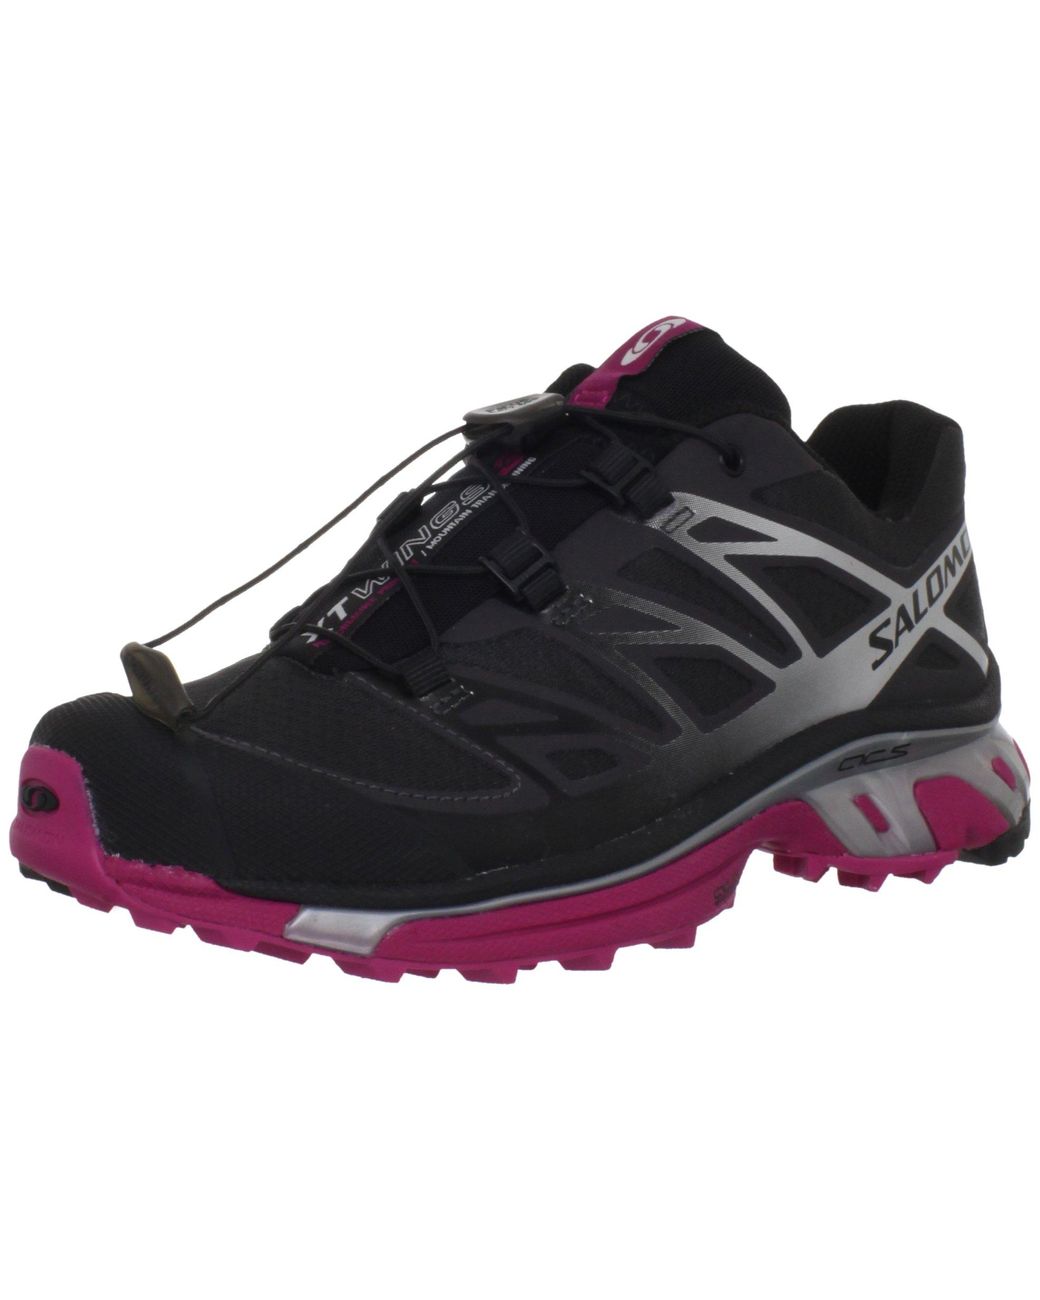 Salomon Xt Wings 3 Trail Running Shoe,asphalt/silver Metallic/fancy Pink,11  M Us in Black | Lyst